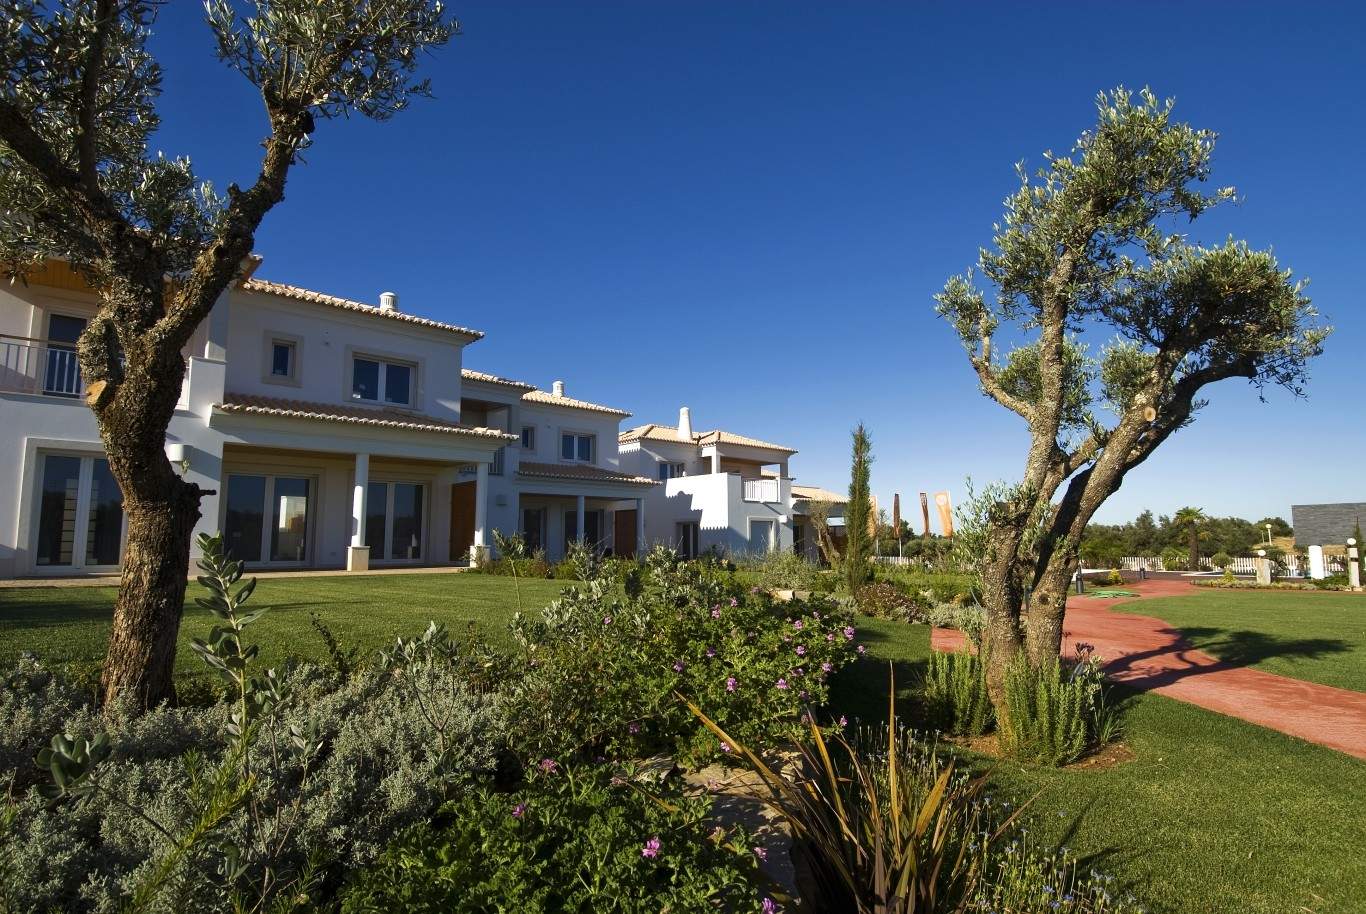 Venda de moradia nova, com piscina, ao golfe de Vilamoura, Algarve_54163